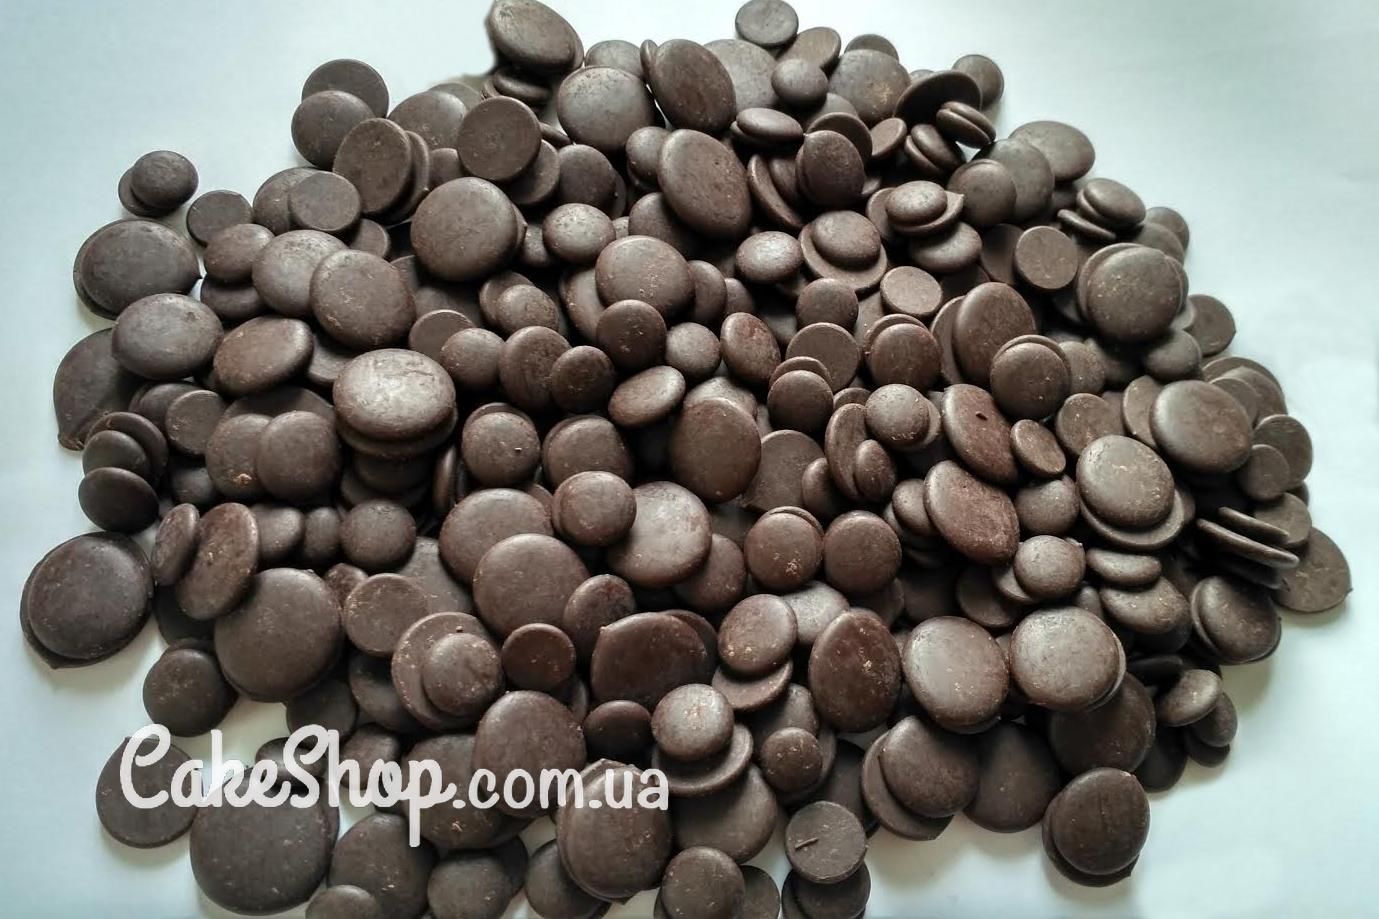 ⋗ Шоколад Сублиме черный Фонденте 72%, 1 кг. купить в Украине ➛ CakeShop.com.ua, фото